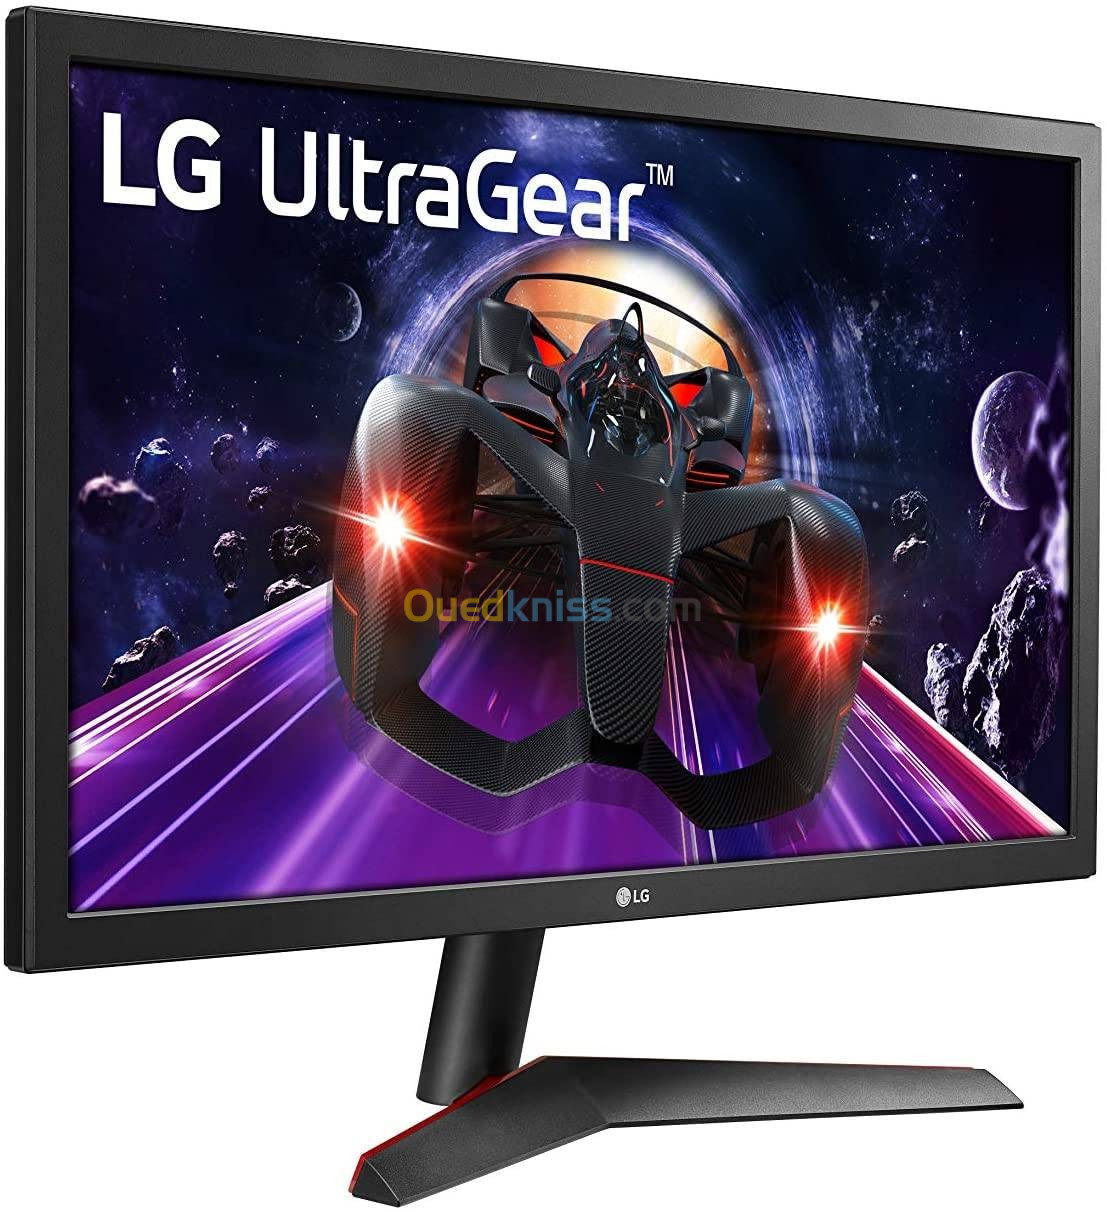 LG 24GN53A Moniteur de jeu UltraGear Full HD (24 pouces) 1 ms 144